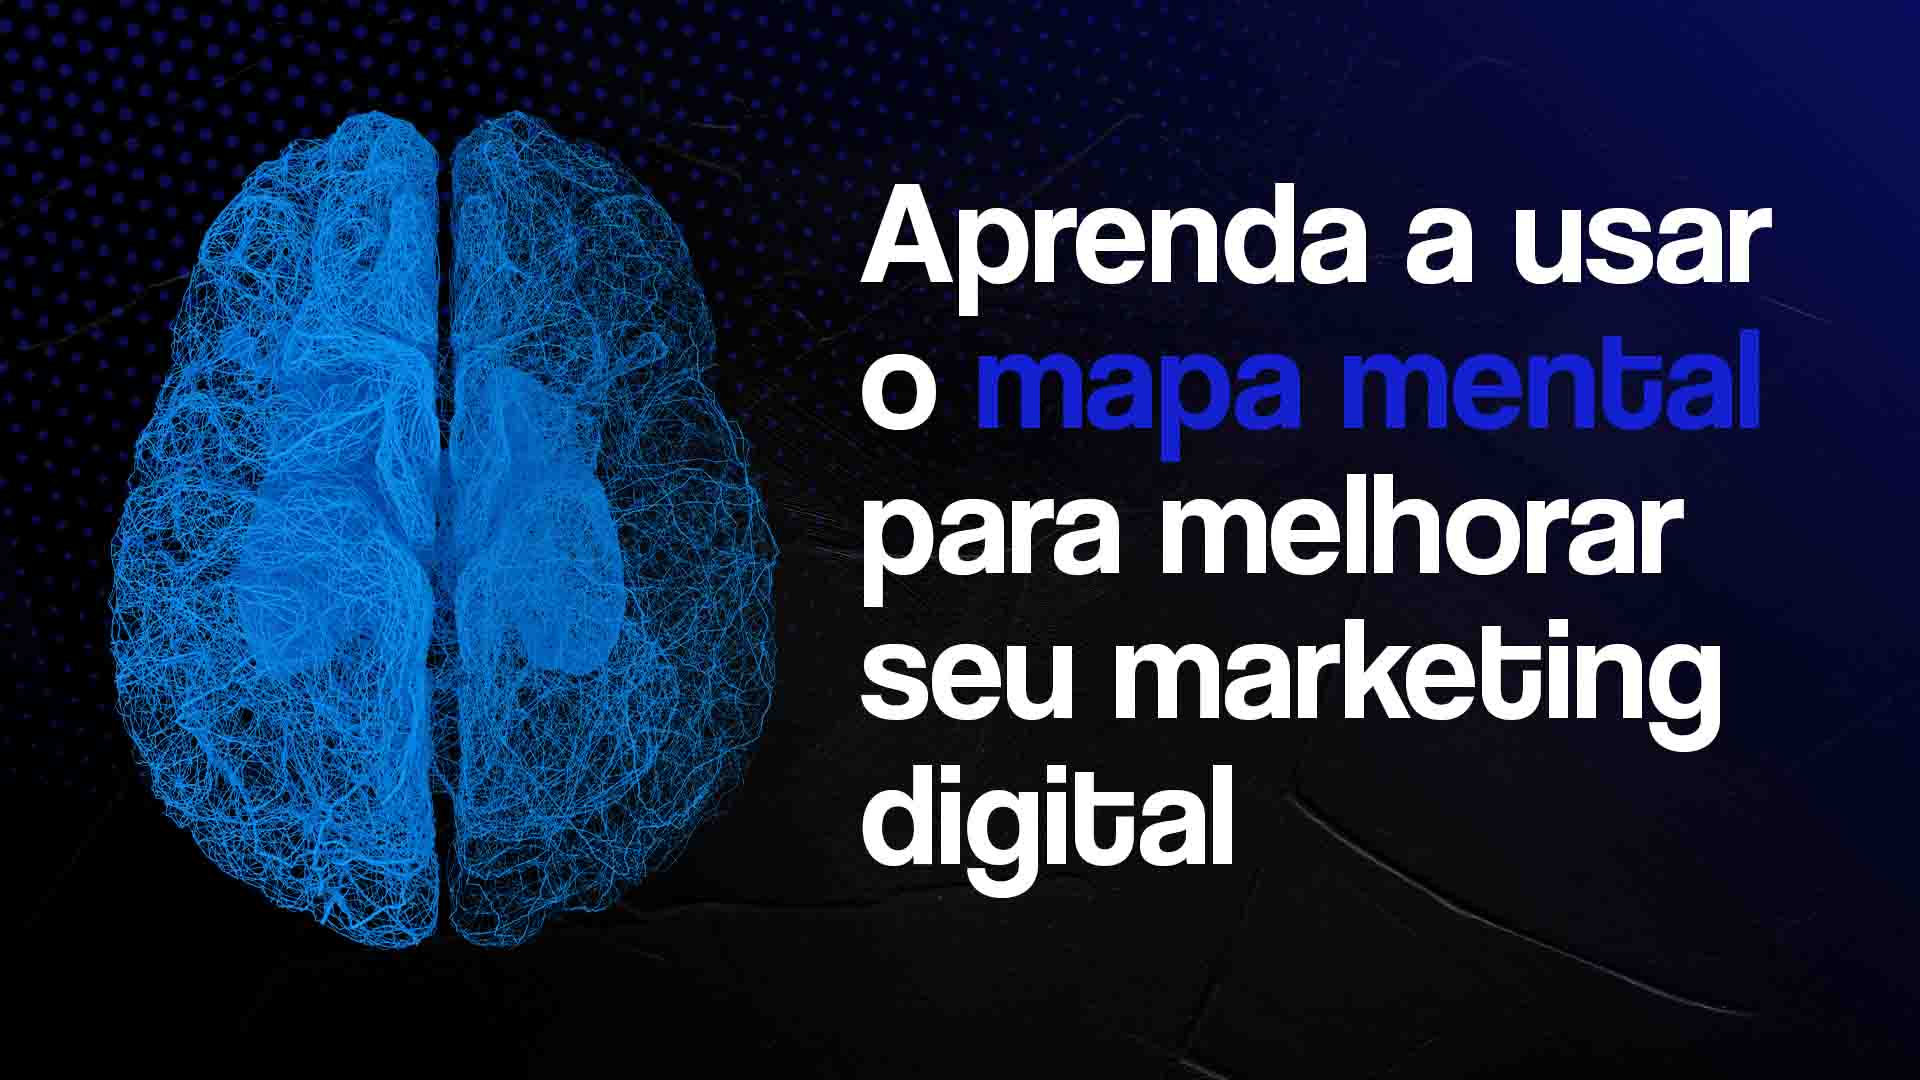 Cérebro azul sobre um fundo preto, com a frase "Aprenda a usar o mapa mental para melhorar seu marketing digital" ao lado.